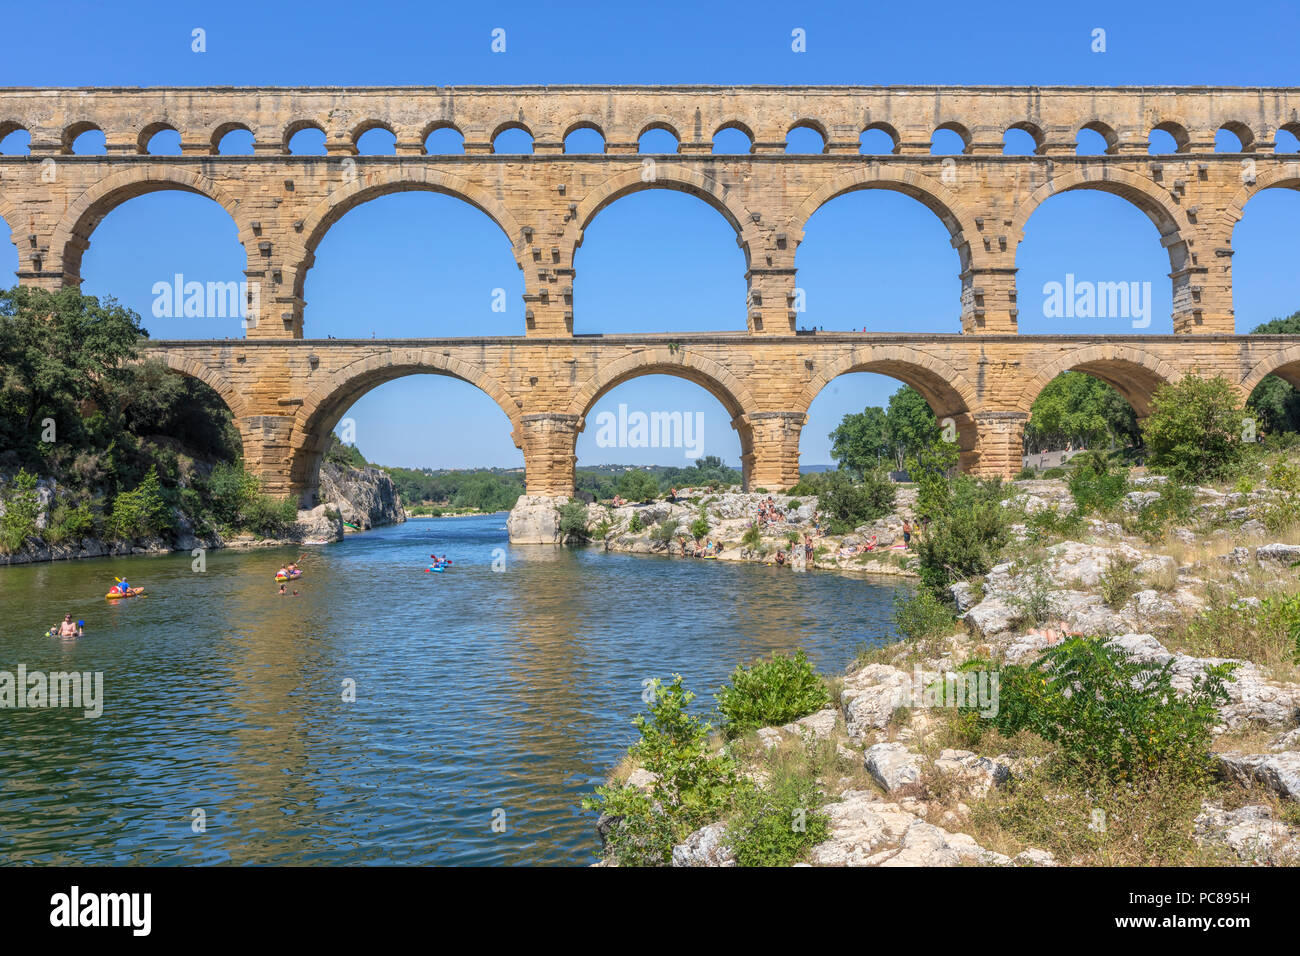 Pont du Gard, Vers-Pont-du-Gard, Gard, Nimes, Redessan, Frankreich Stockfoto